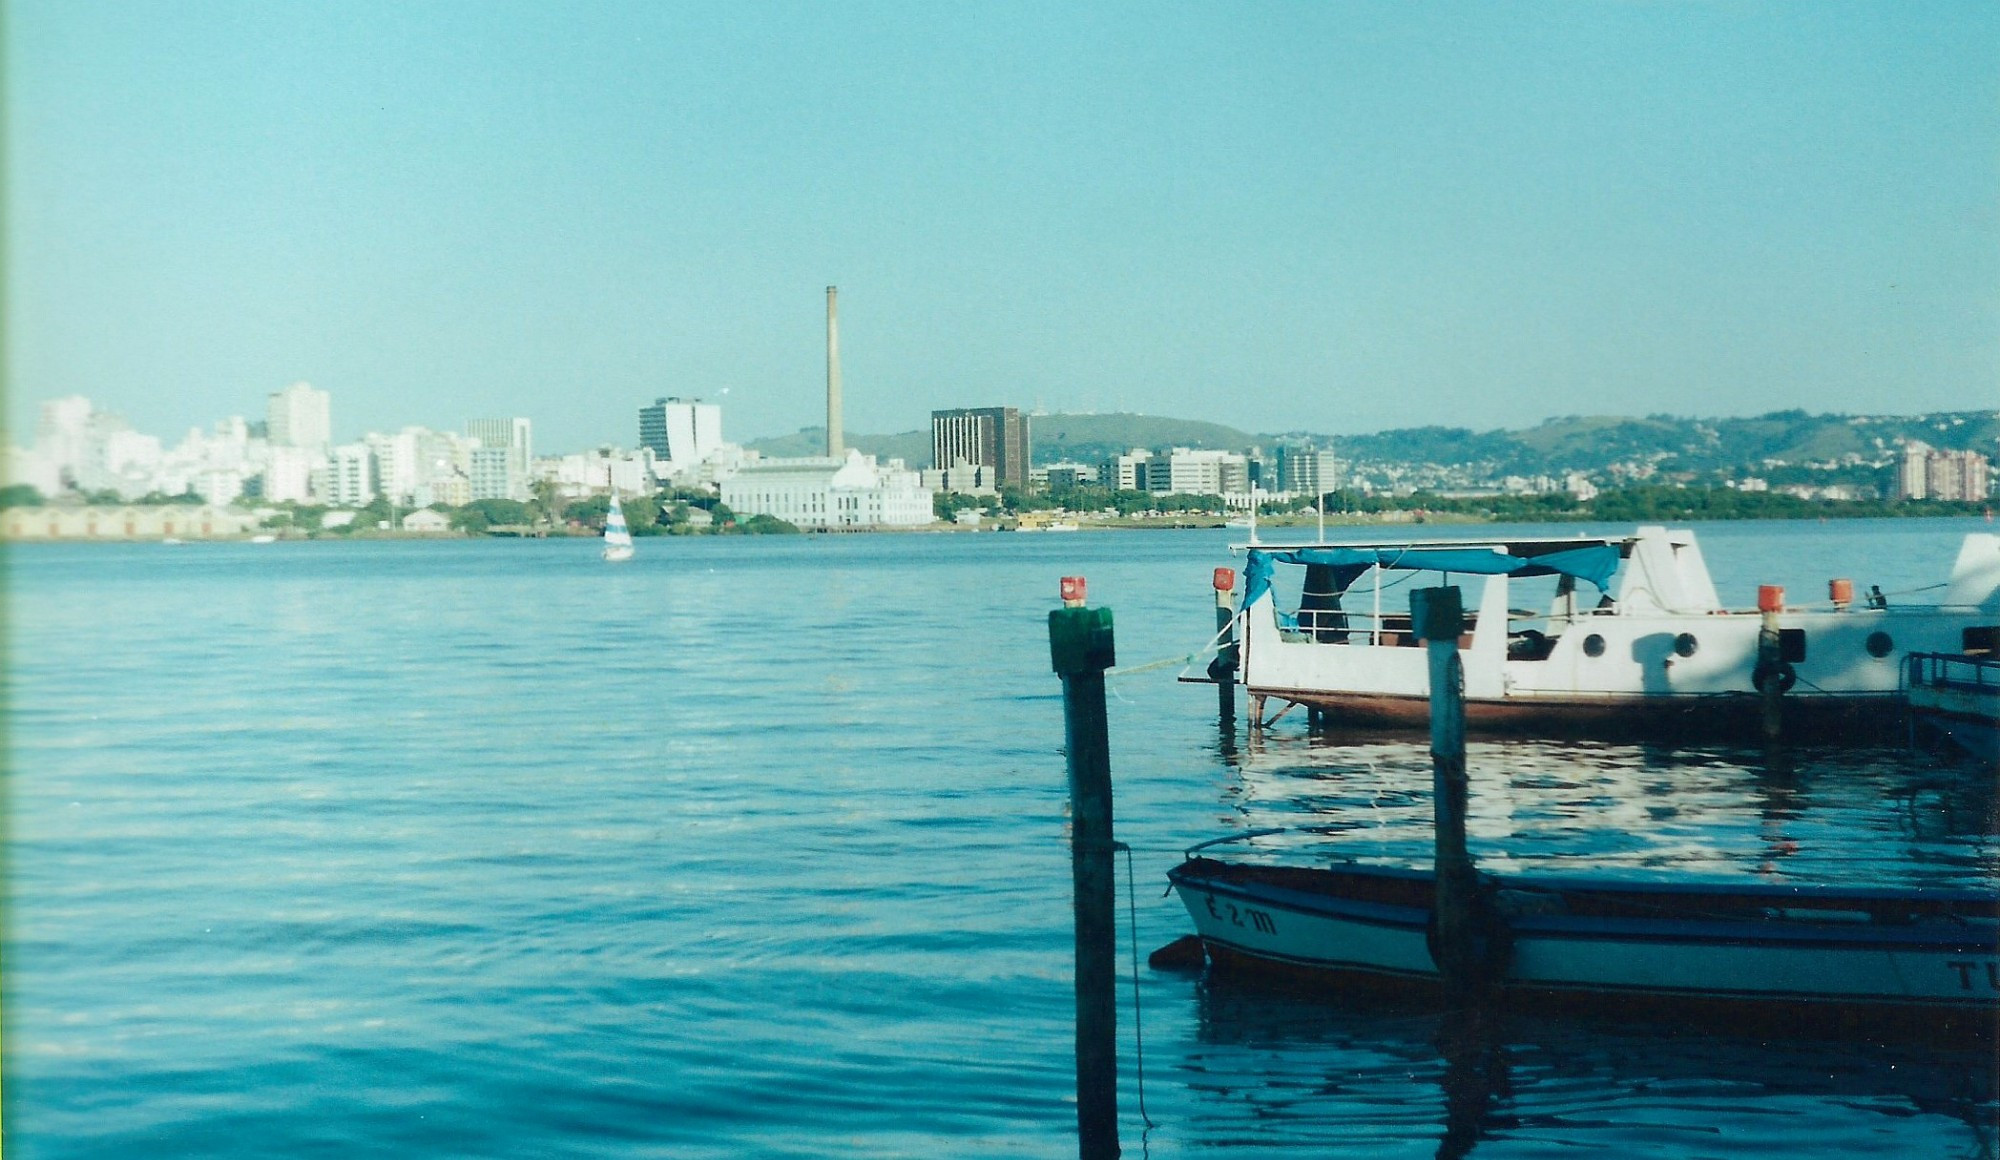 Usina do Gasômetro, em Porto Alegre, vista da Ilha Grande dos Marinheiros